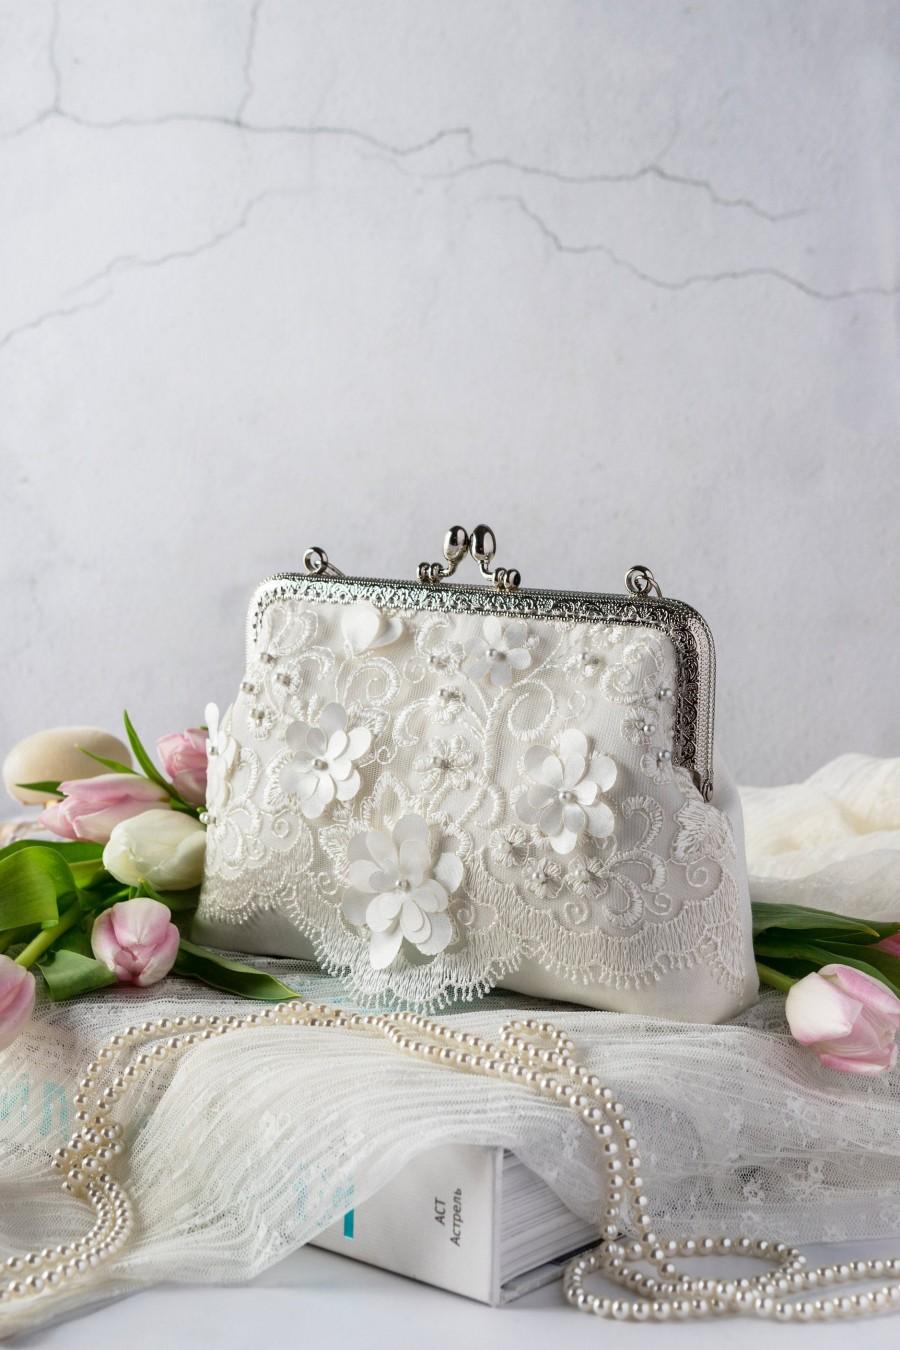 زفاف - 3D lace ivory wedding clutch for bride / Daughter gift from mom - Bride gift from groom / Bridal shower gift ivory clutch purse